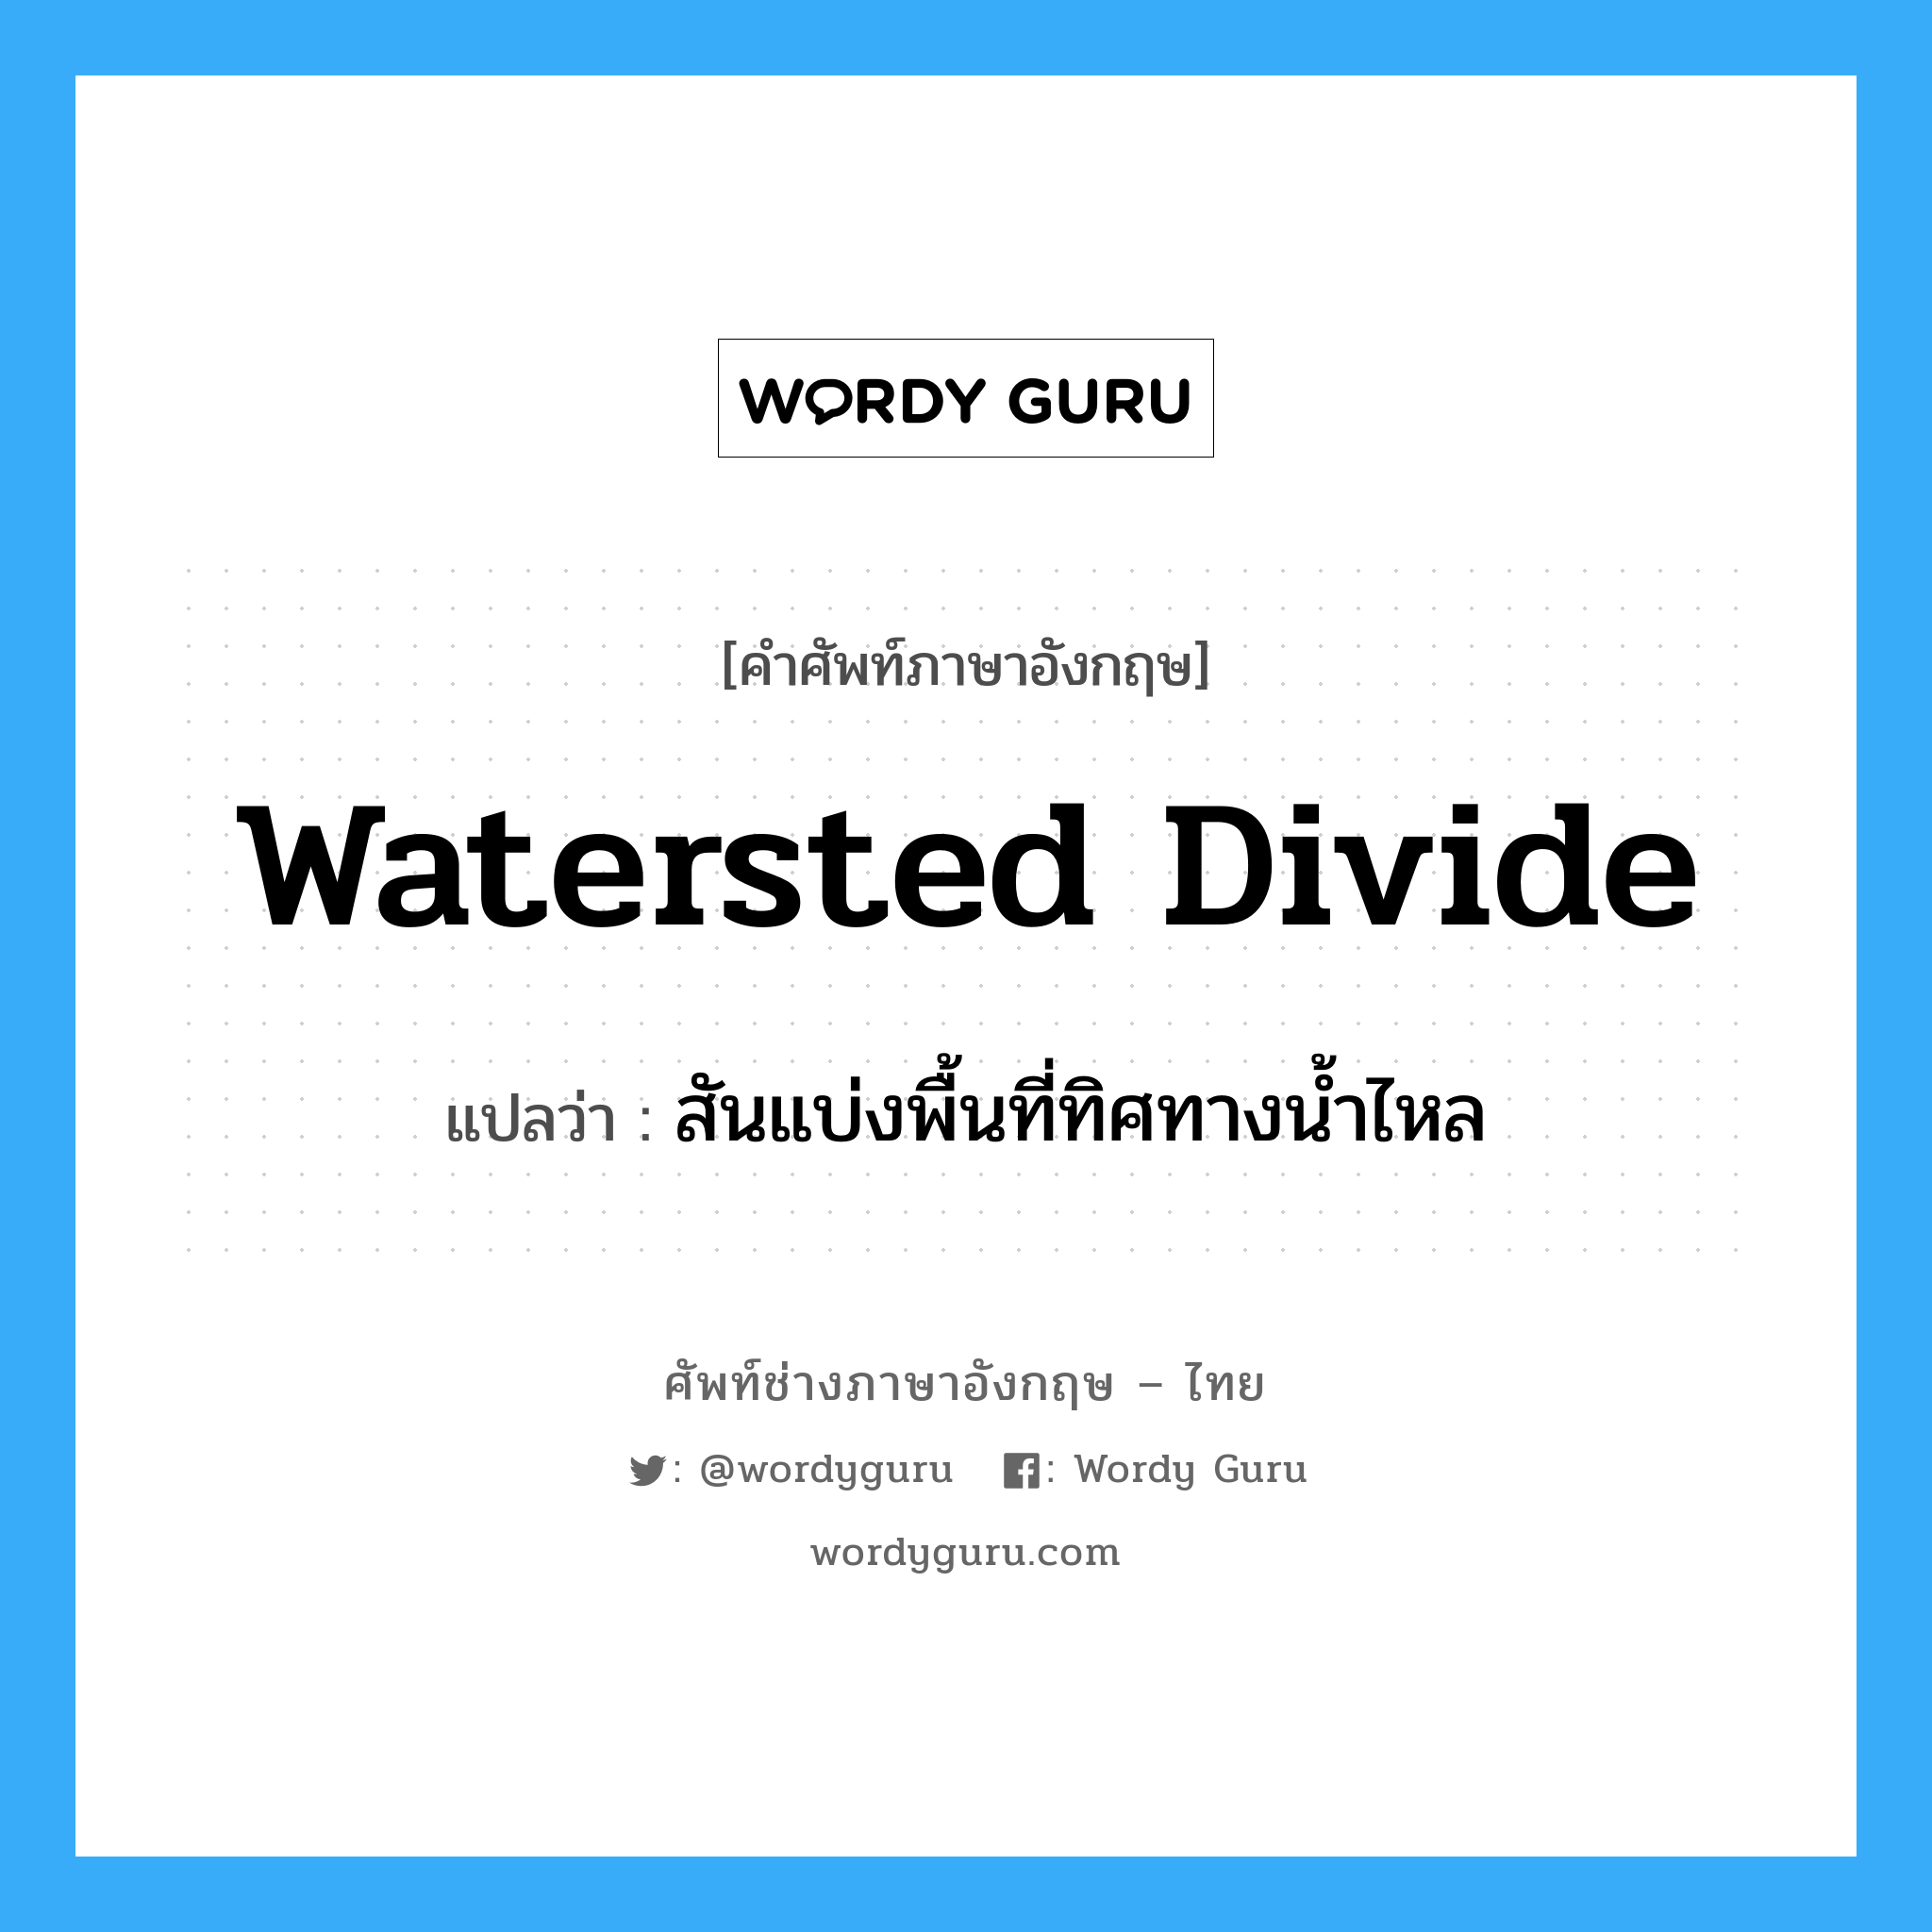 watersted divide แปลว่า?, คำศัพท์ช่างภาษาอังกฤษ - ไทย watersted divide คำศัพท์ภาษาอังกฤษ watersted divide แปลว่า สันแบ่งพื้นที่ทิศทางน้ำไหล